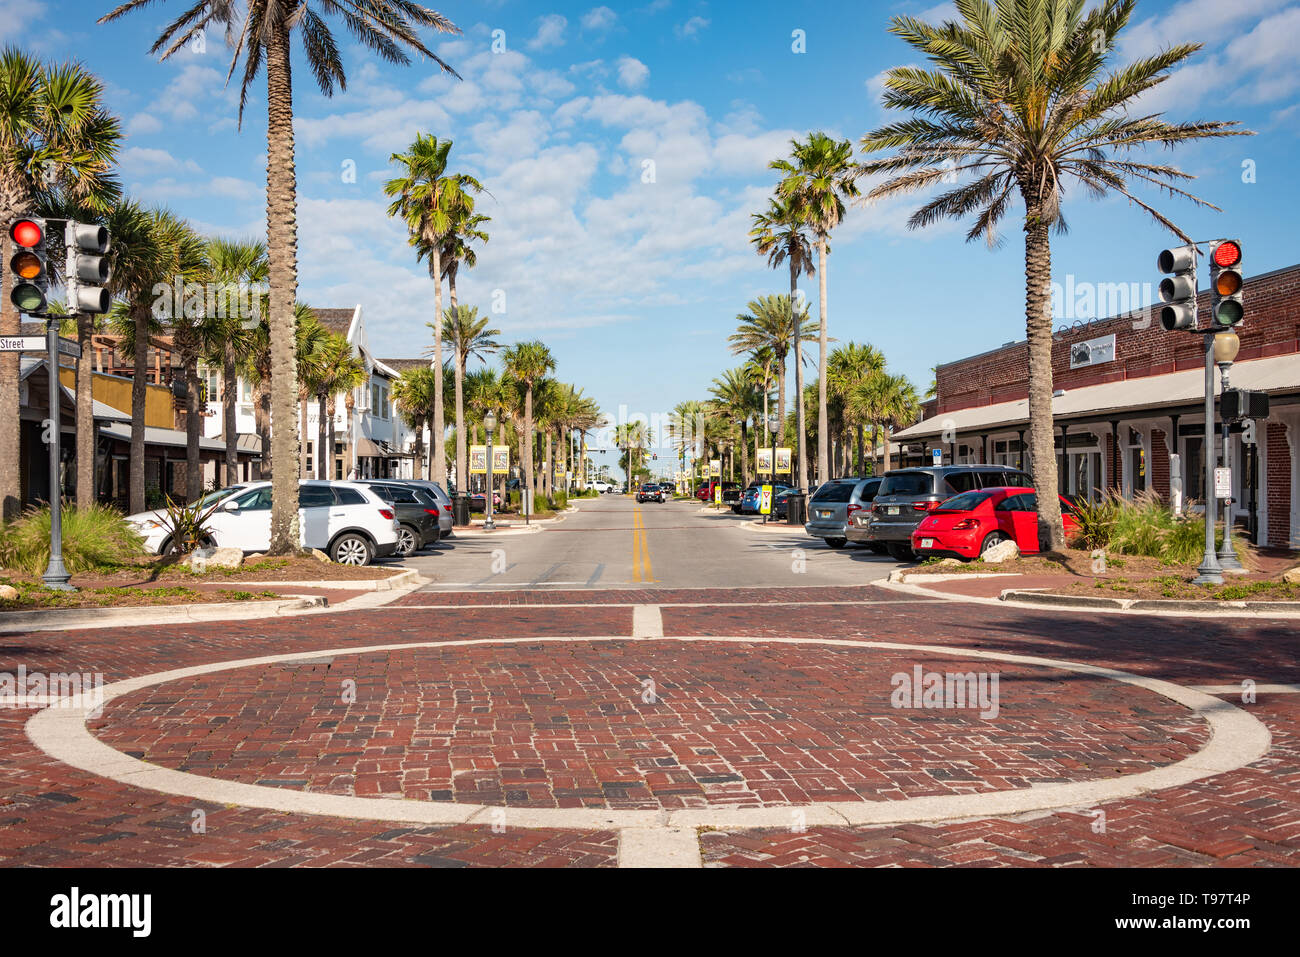 Ciudad de Playa restaurantes locales línea entre la calle Florida A1A y Ocean Boulevard en la línea divisoria entre Atlantic Beach y Neptune Beach, FL. Foto de stock